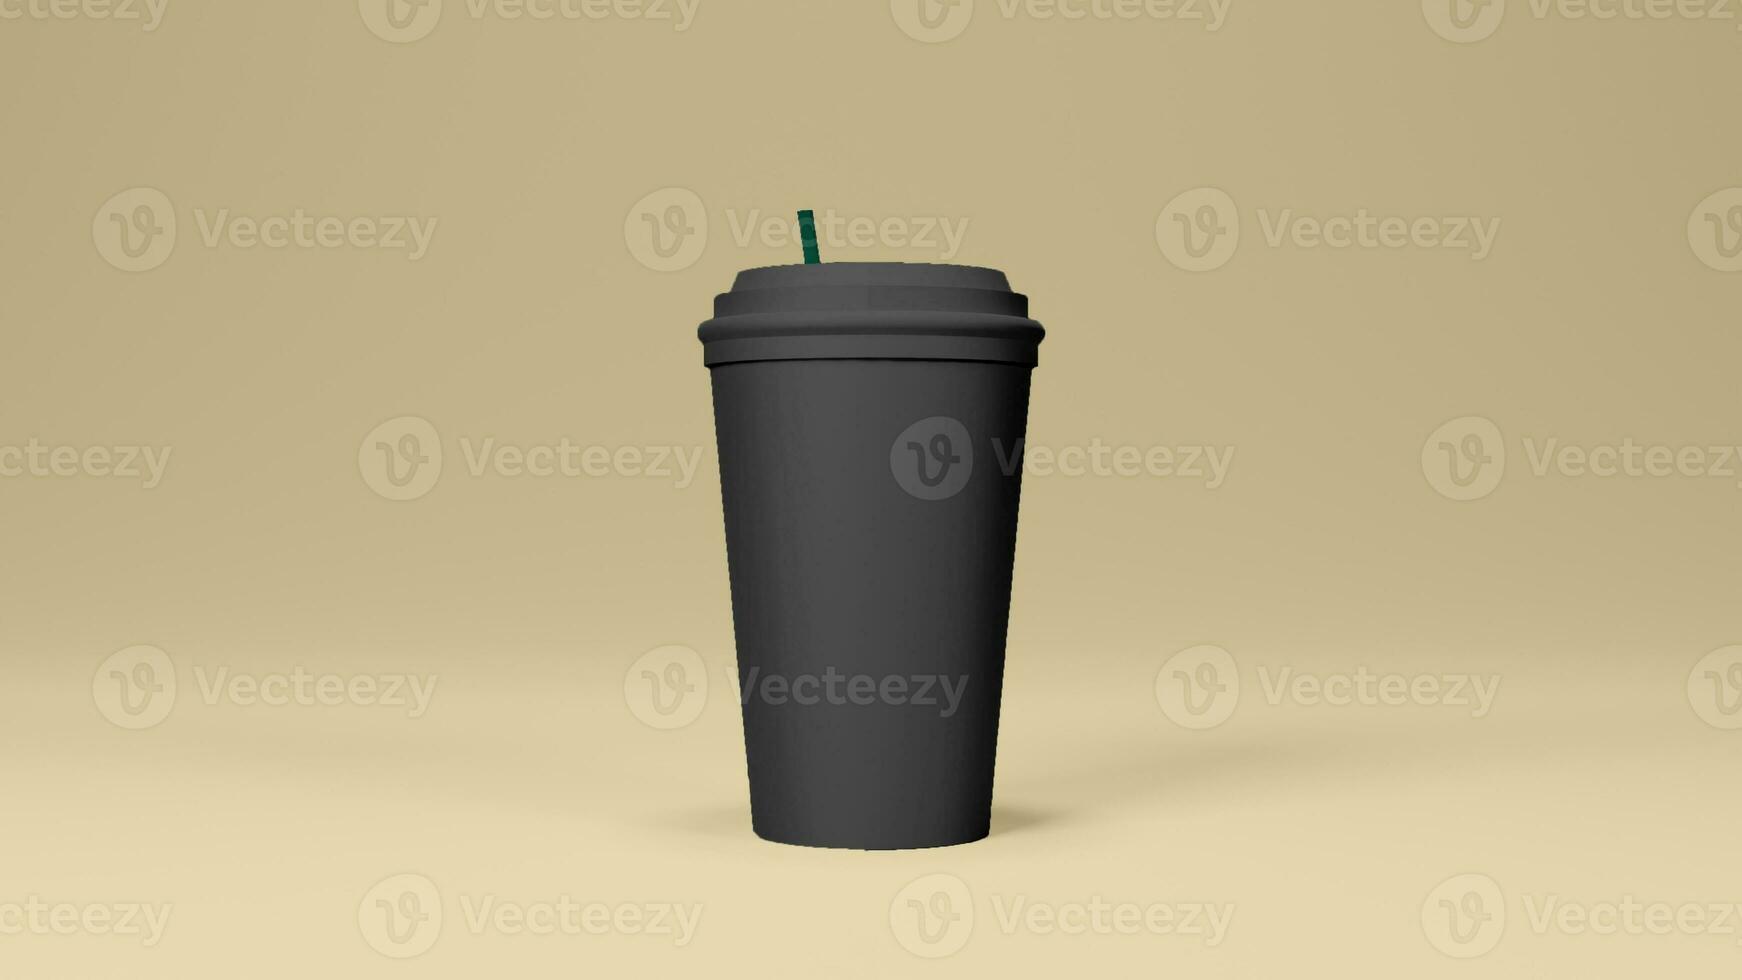 schwarz farbig heiß Kaffee Tasse im Gelb Hintergrund foto